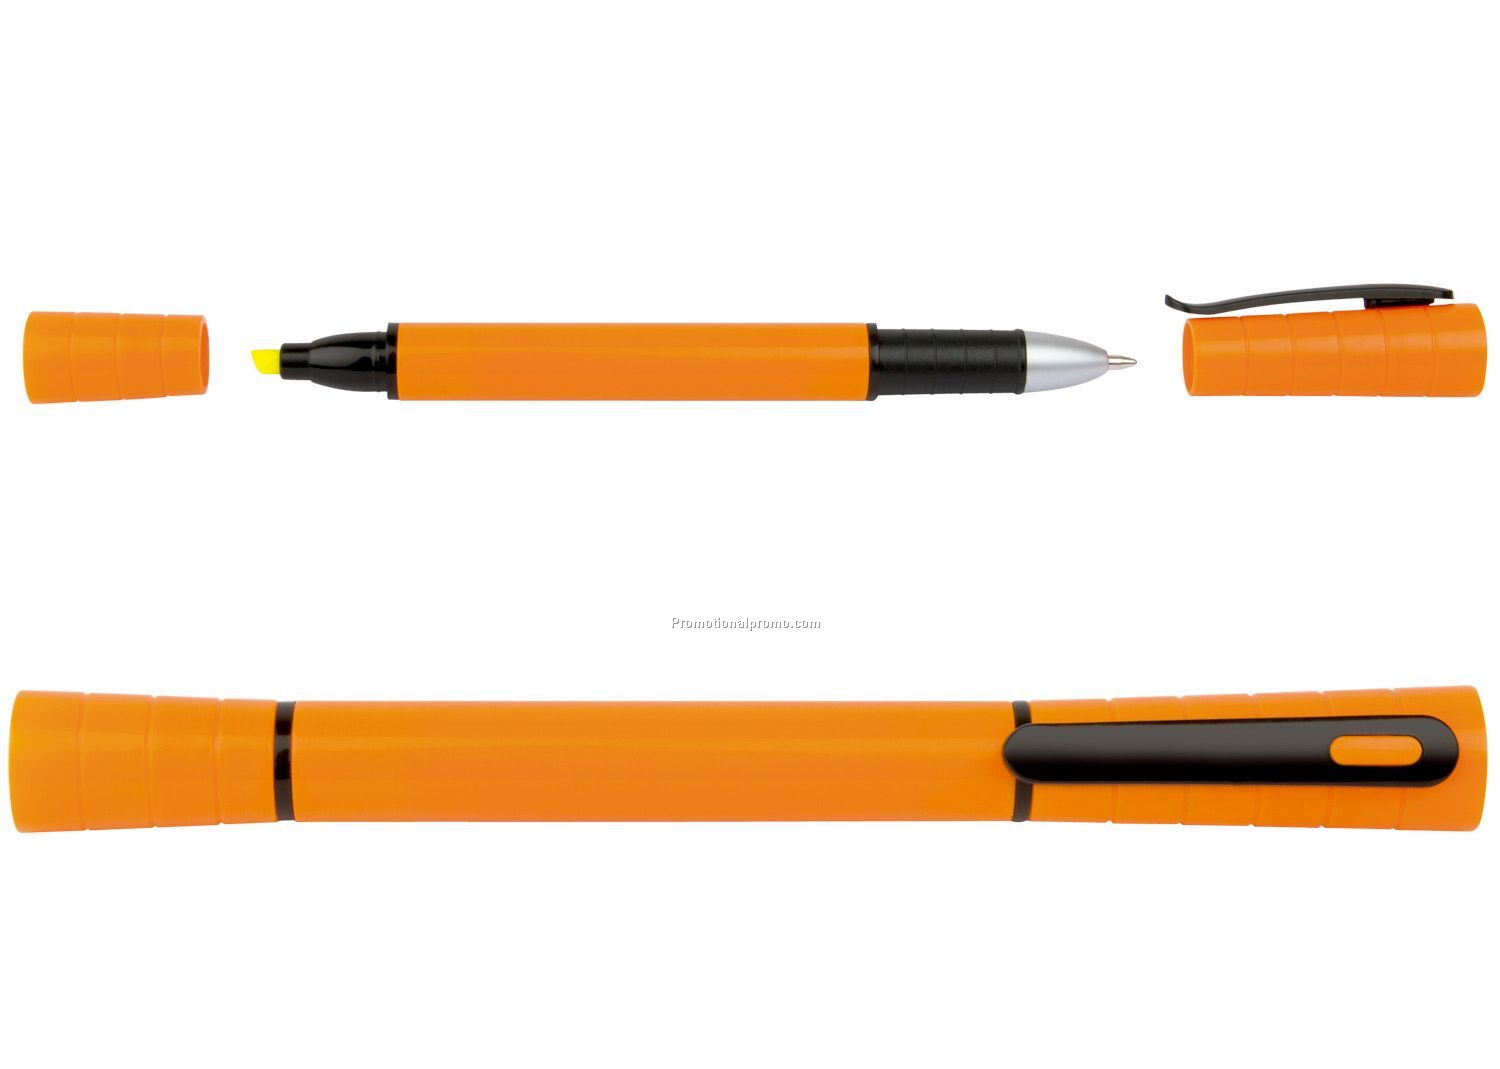 2 in 1 highlighter pen